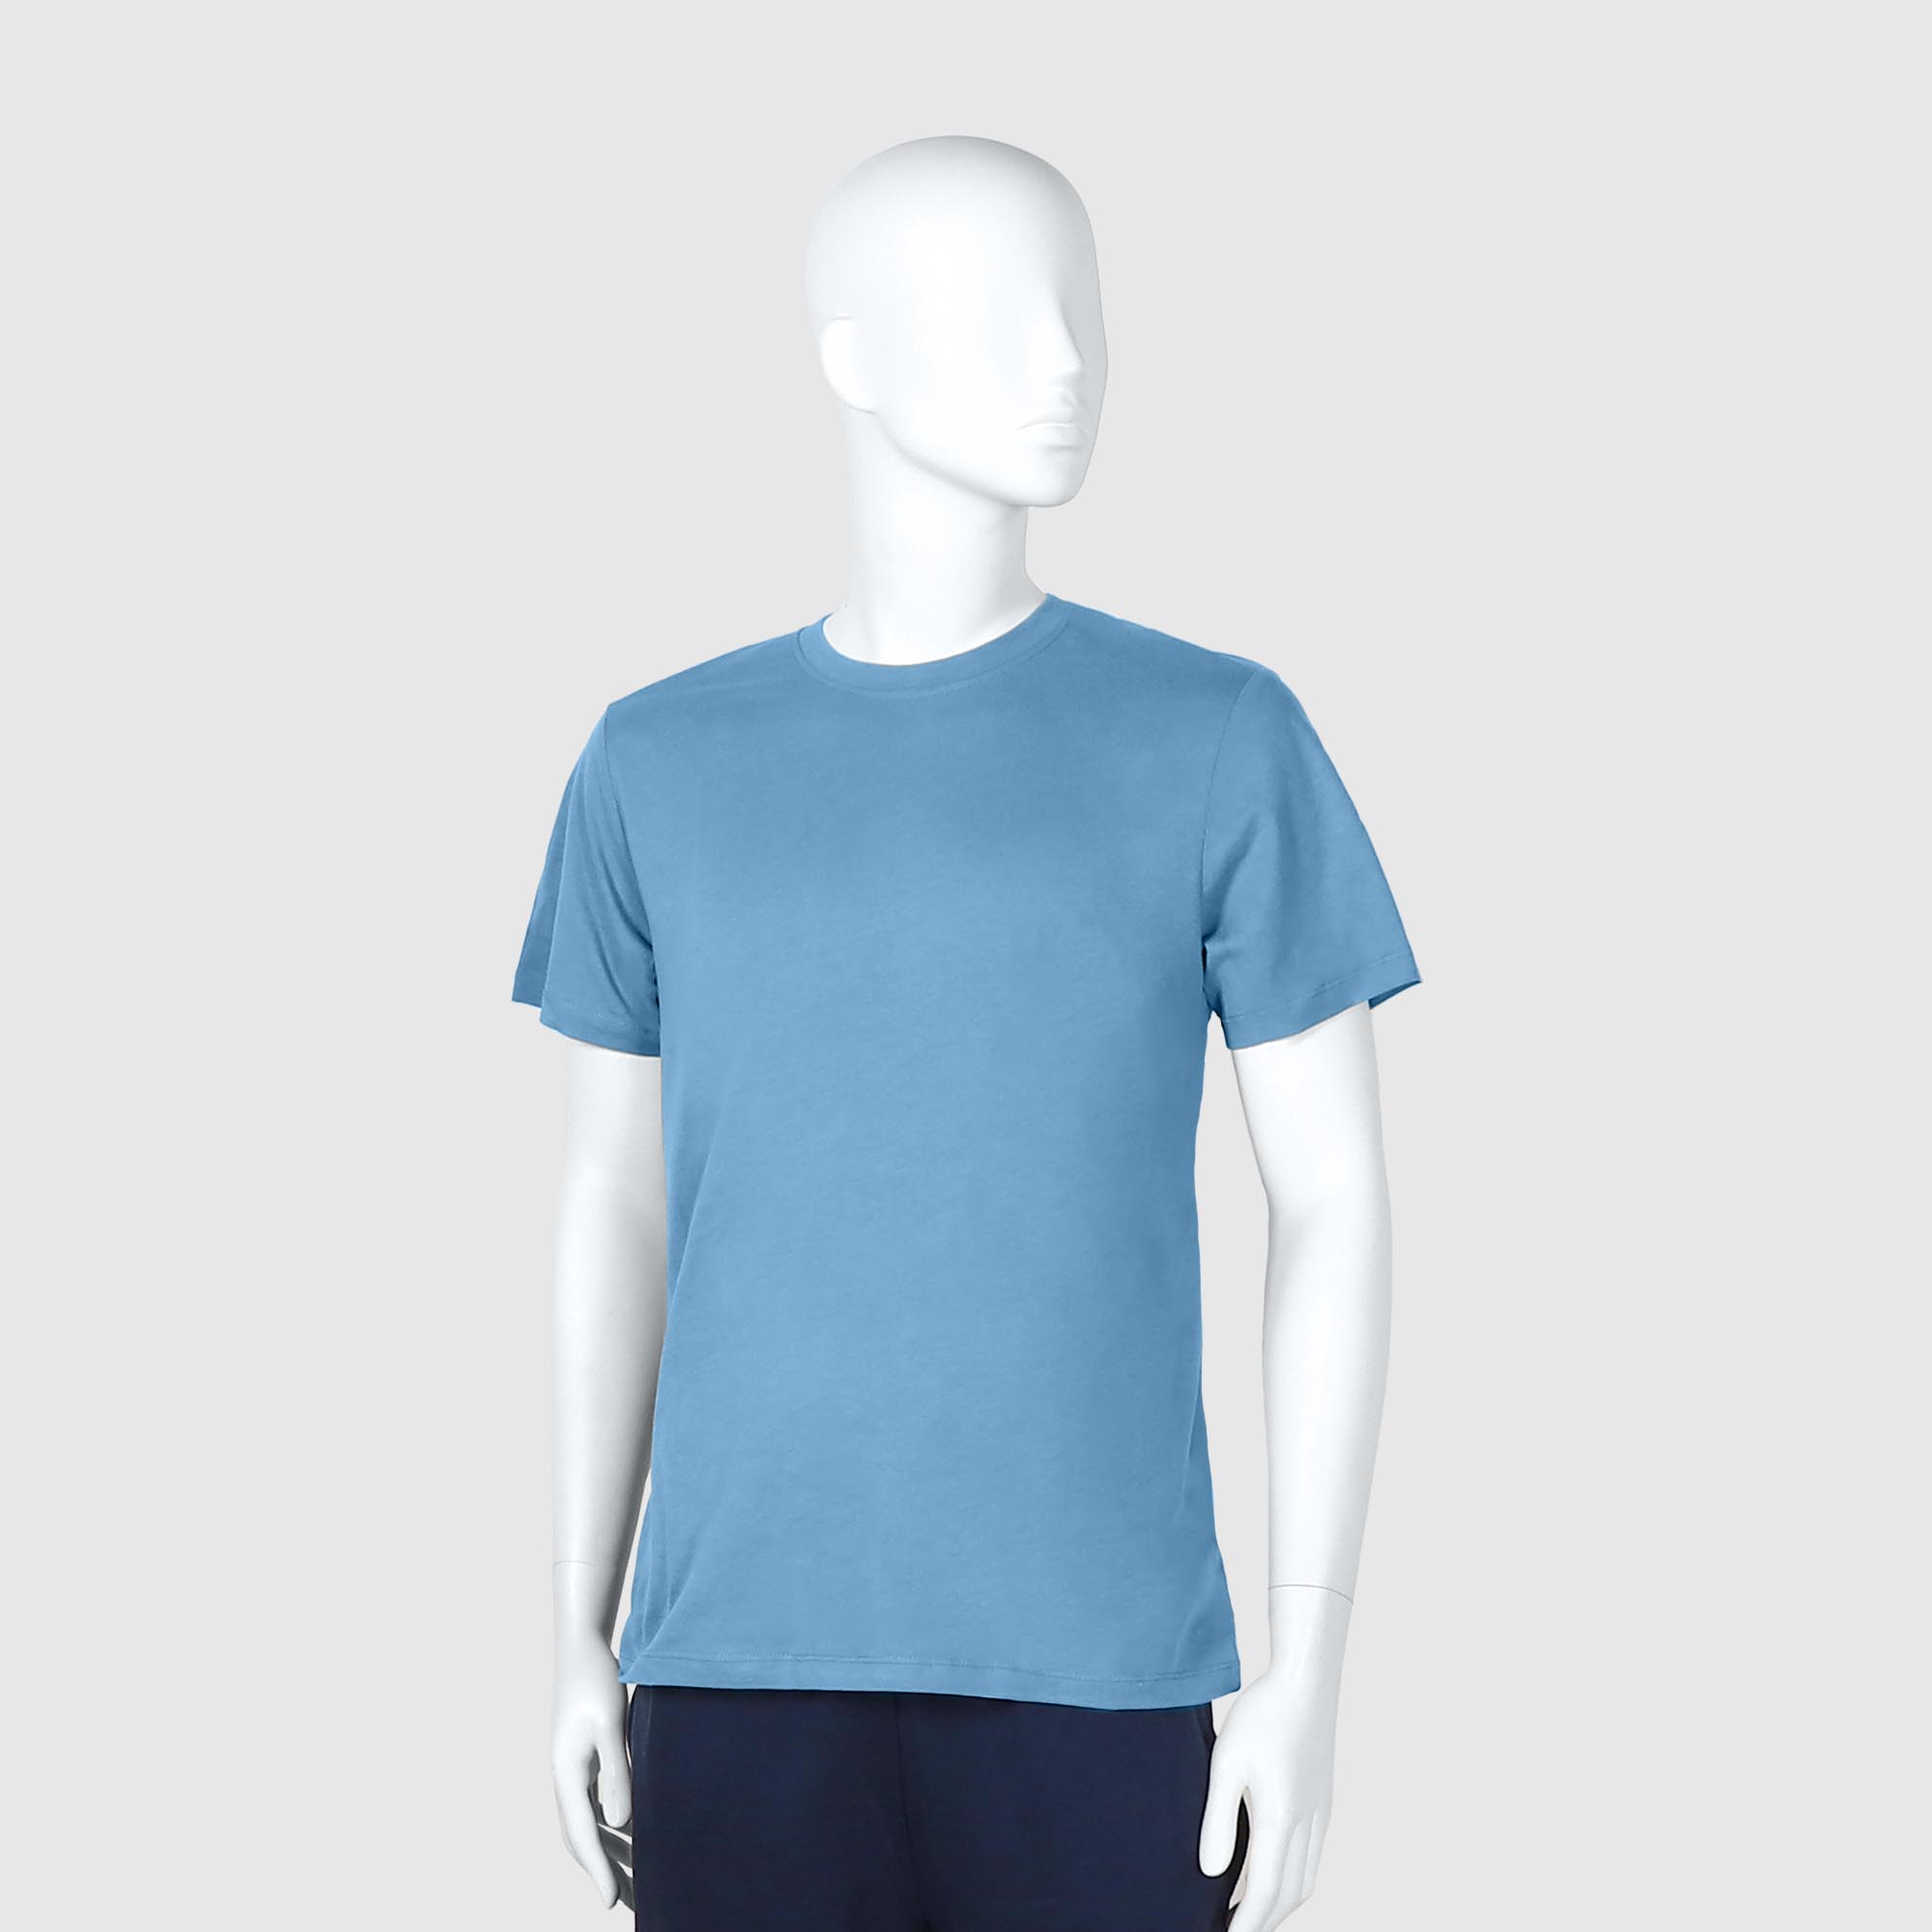 Мужская футболка Diva Teks голубая (DTD-03), цвет голубой, размер 40-52